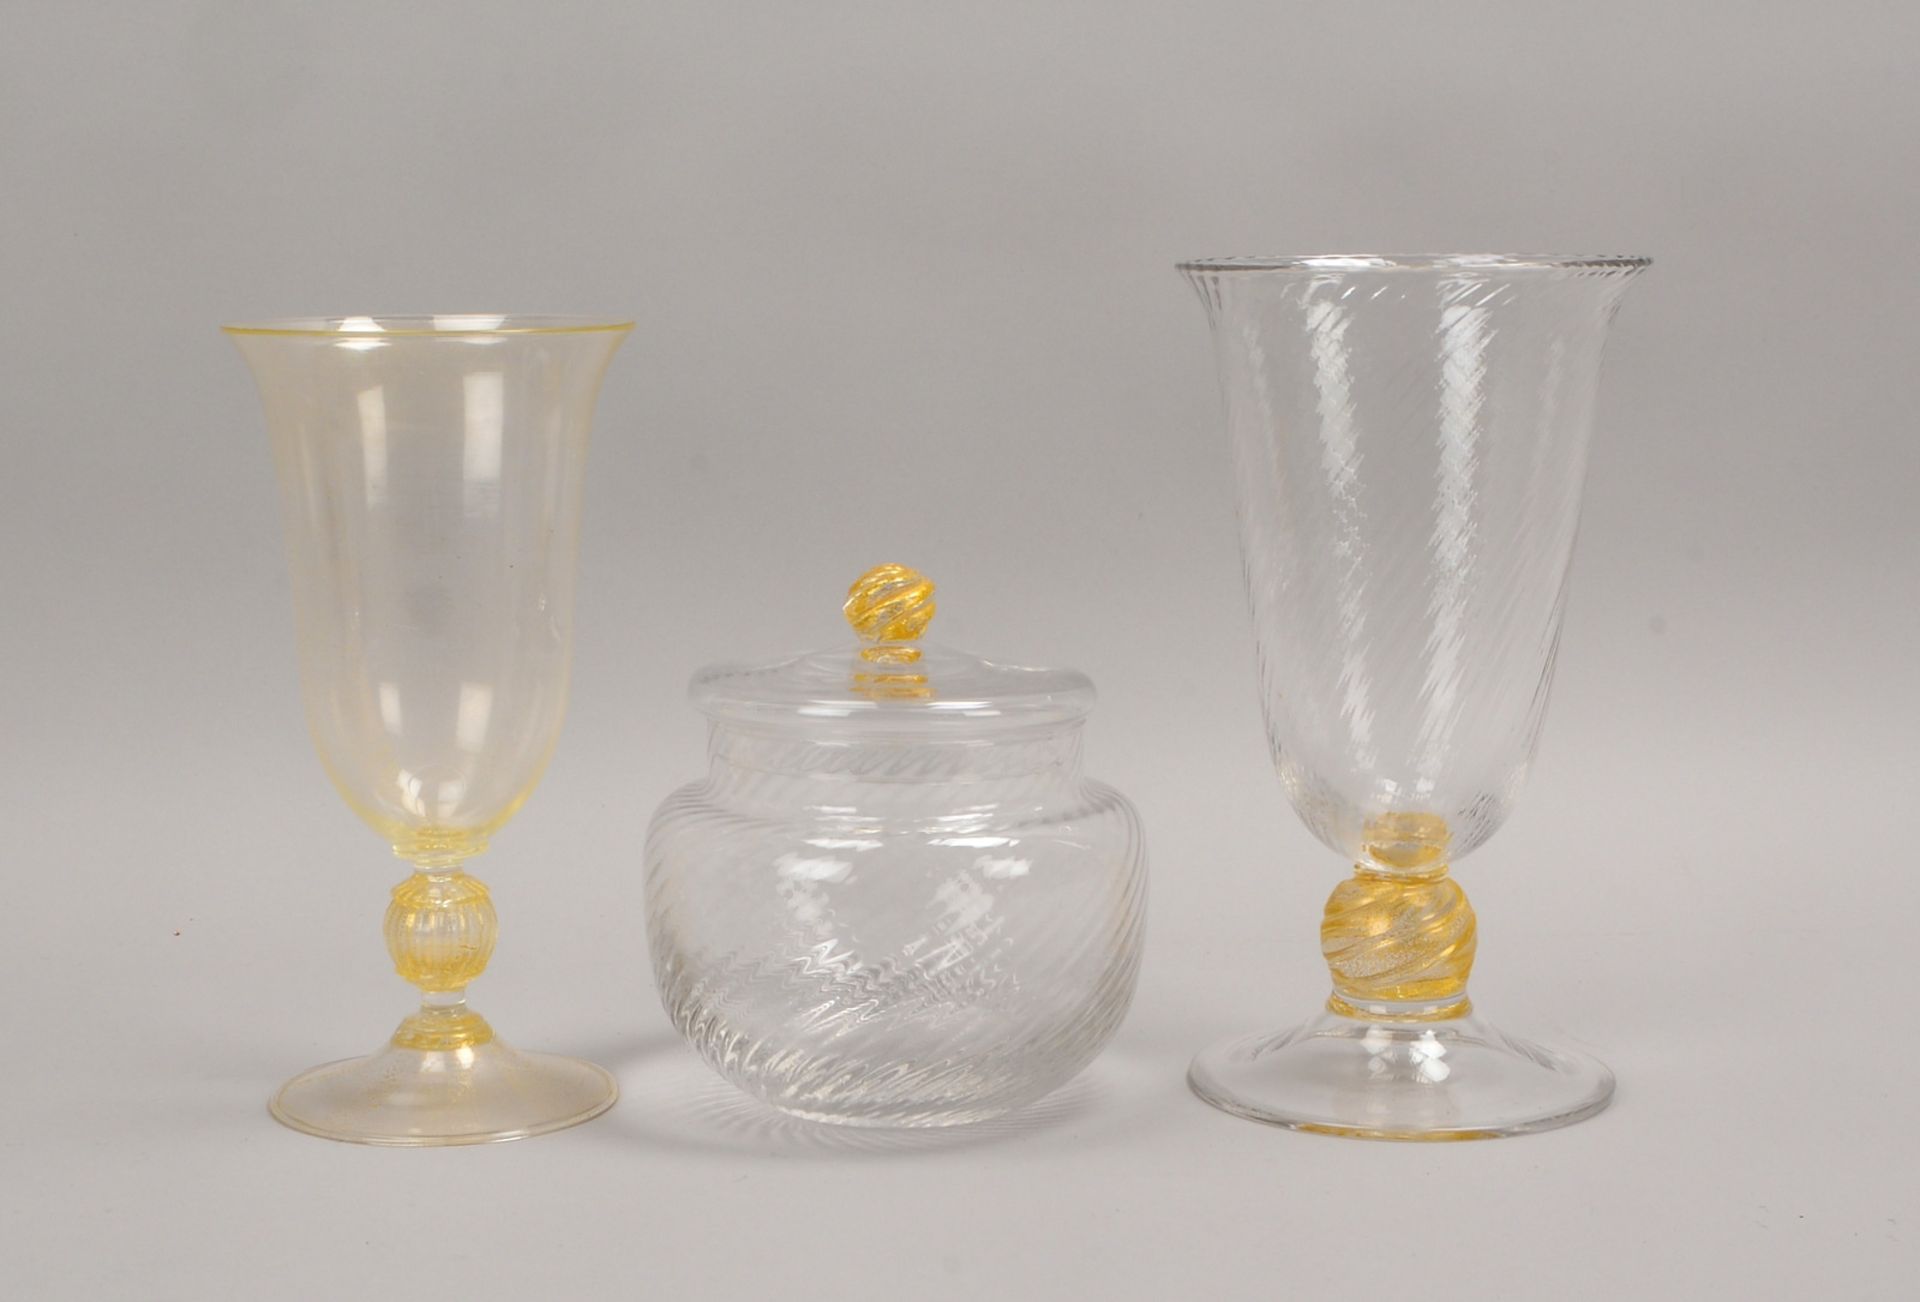 Tischglas-Konvolut/teils mit Goldflimmer: 2x Tischvasen und 1 Bonbonnière